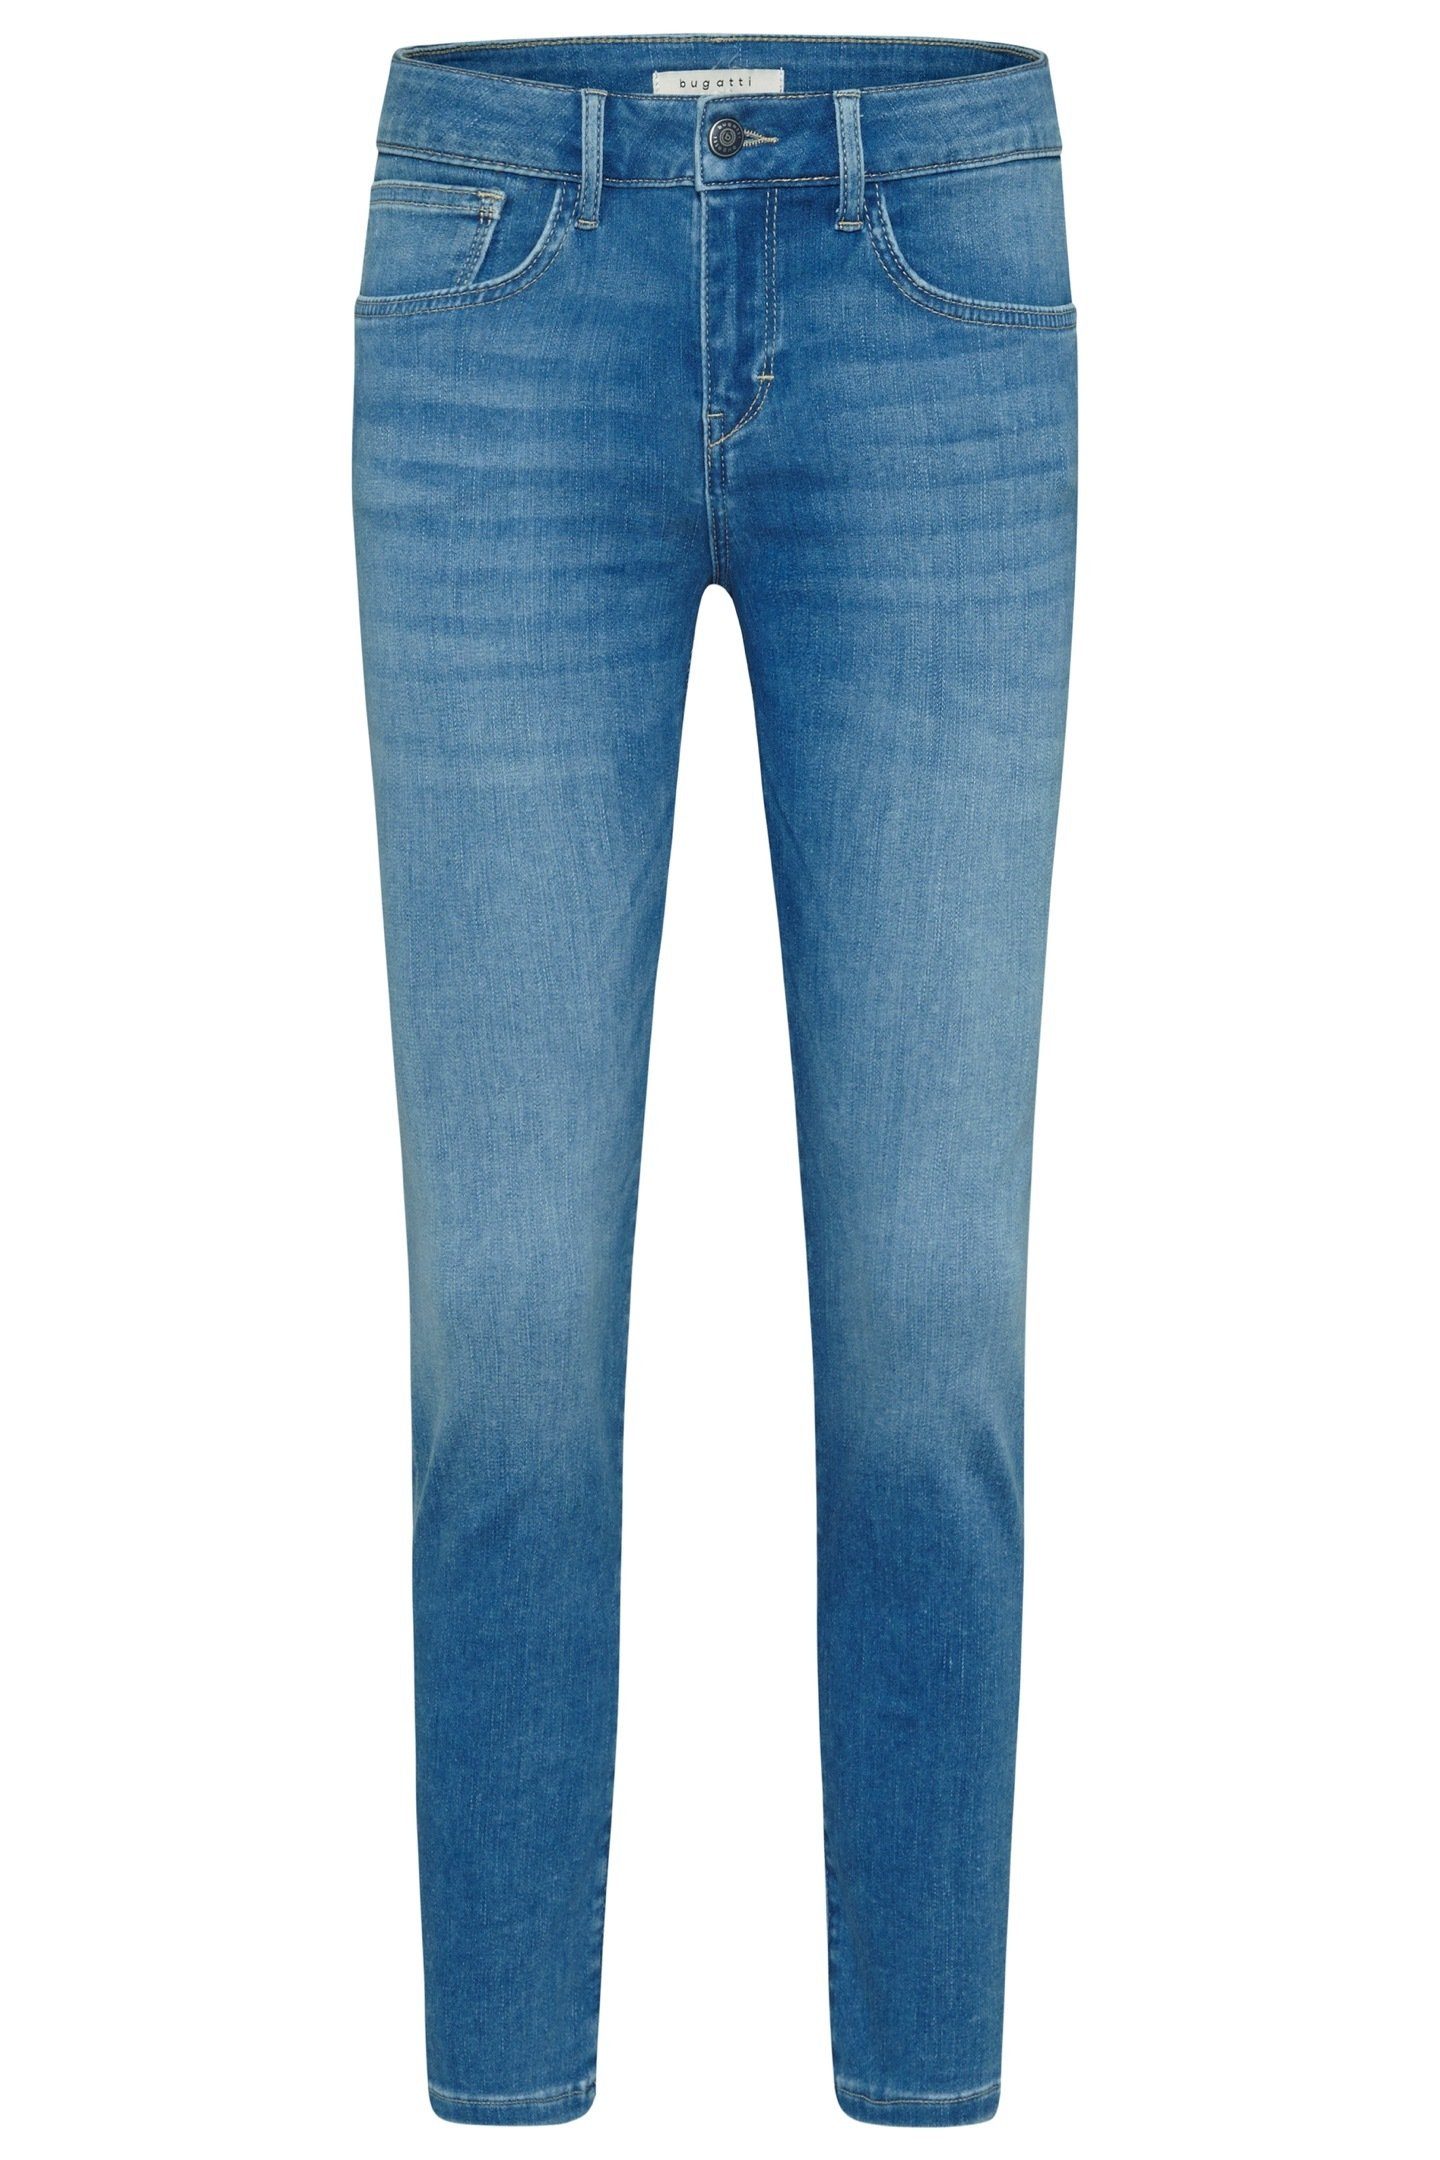 Optik coolen 5-Pocket-Jeans bugatti hellblau in einer